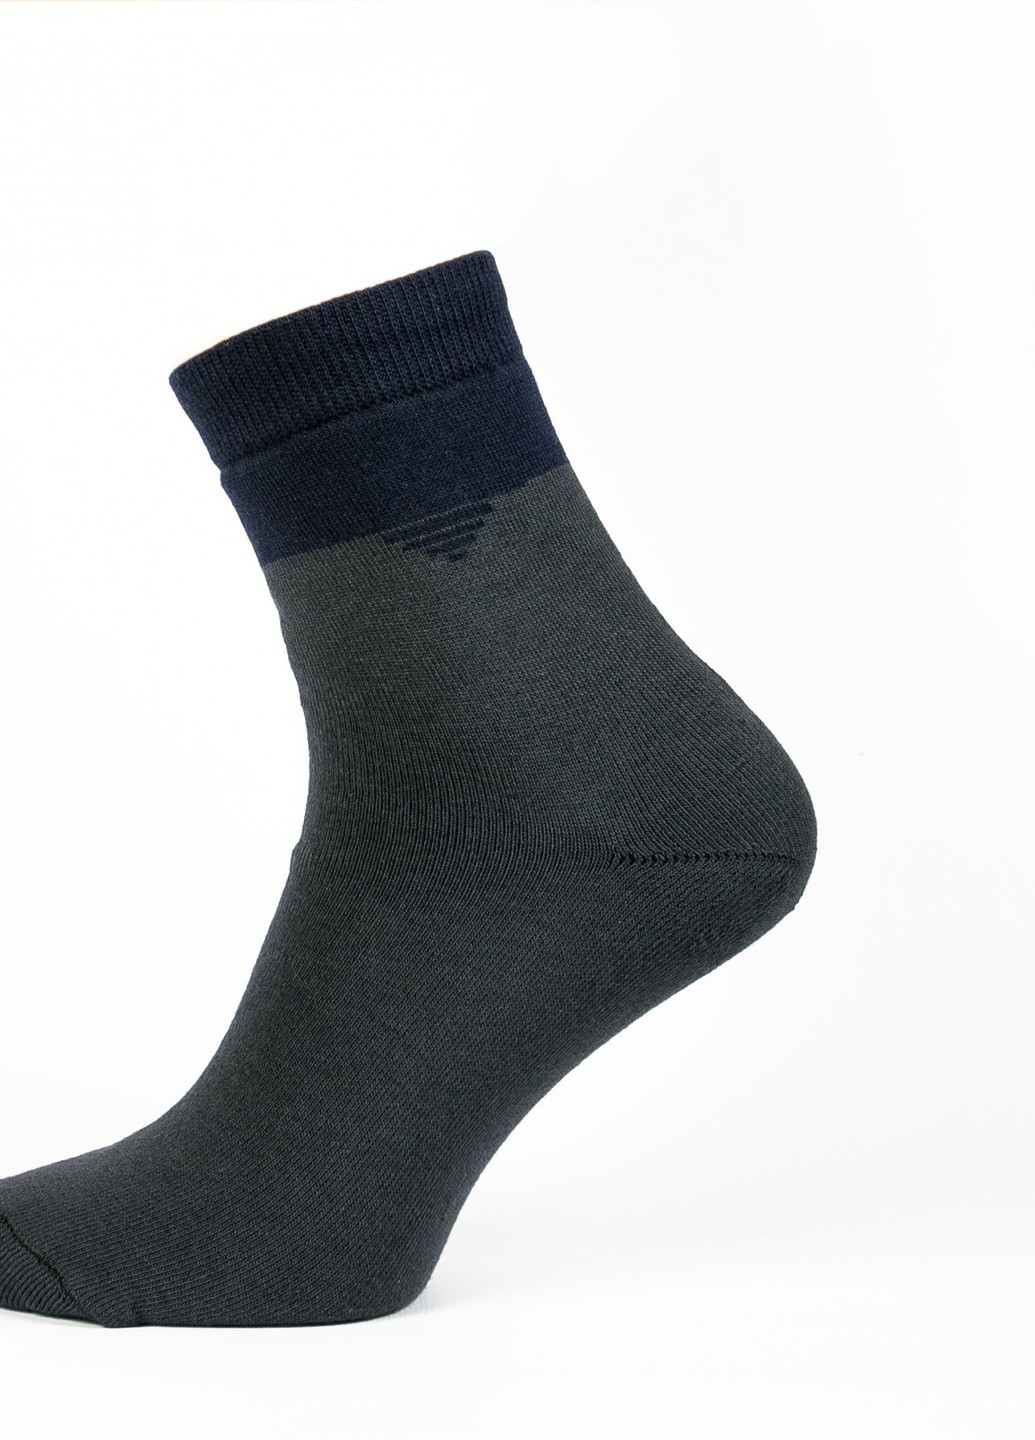 Шкарпетки чоловічі ТМ "Нова пара" плюш 443 НОВА ПАРА середня висота (257108310)